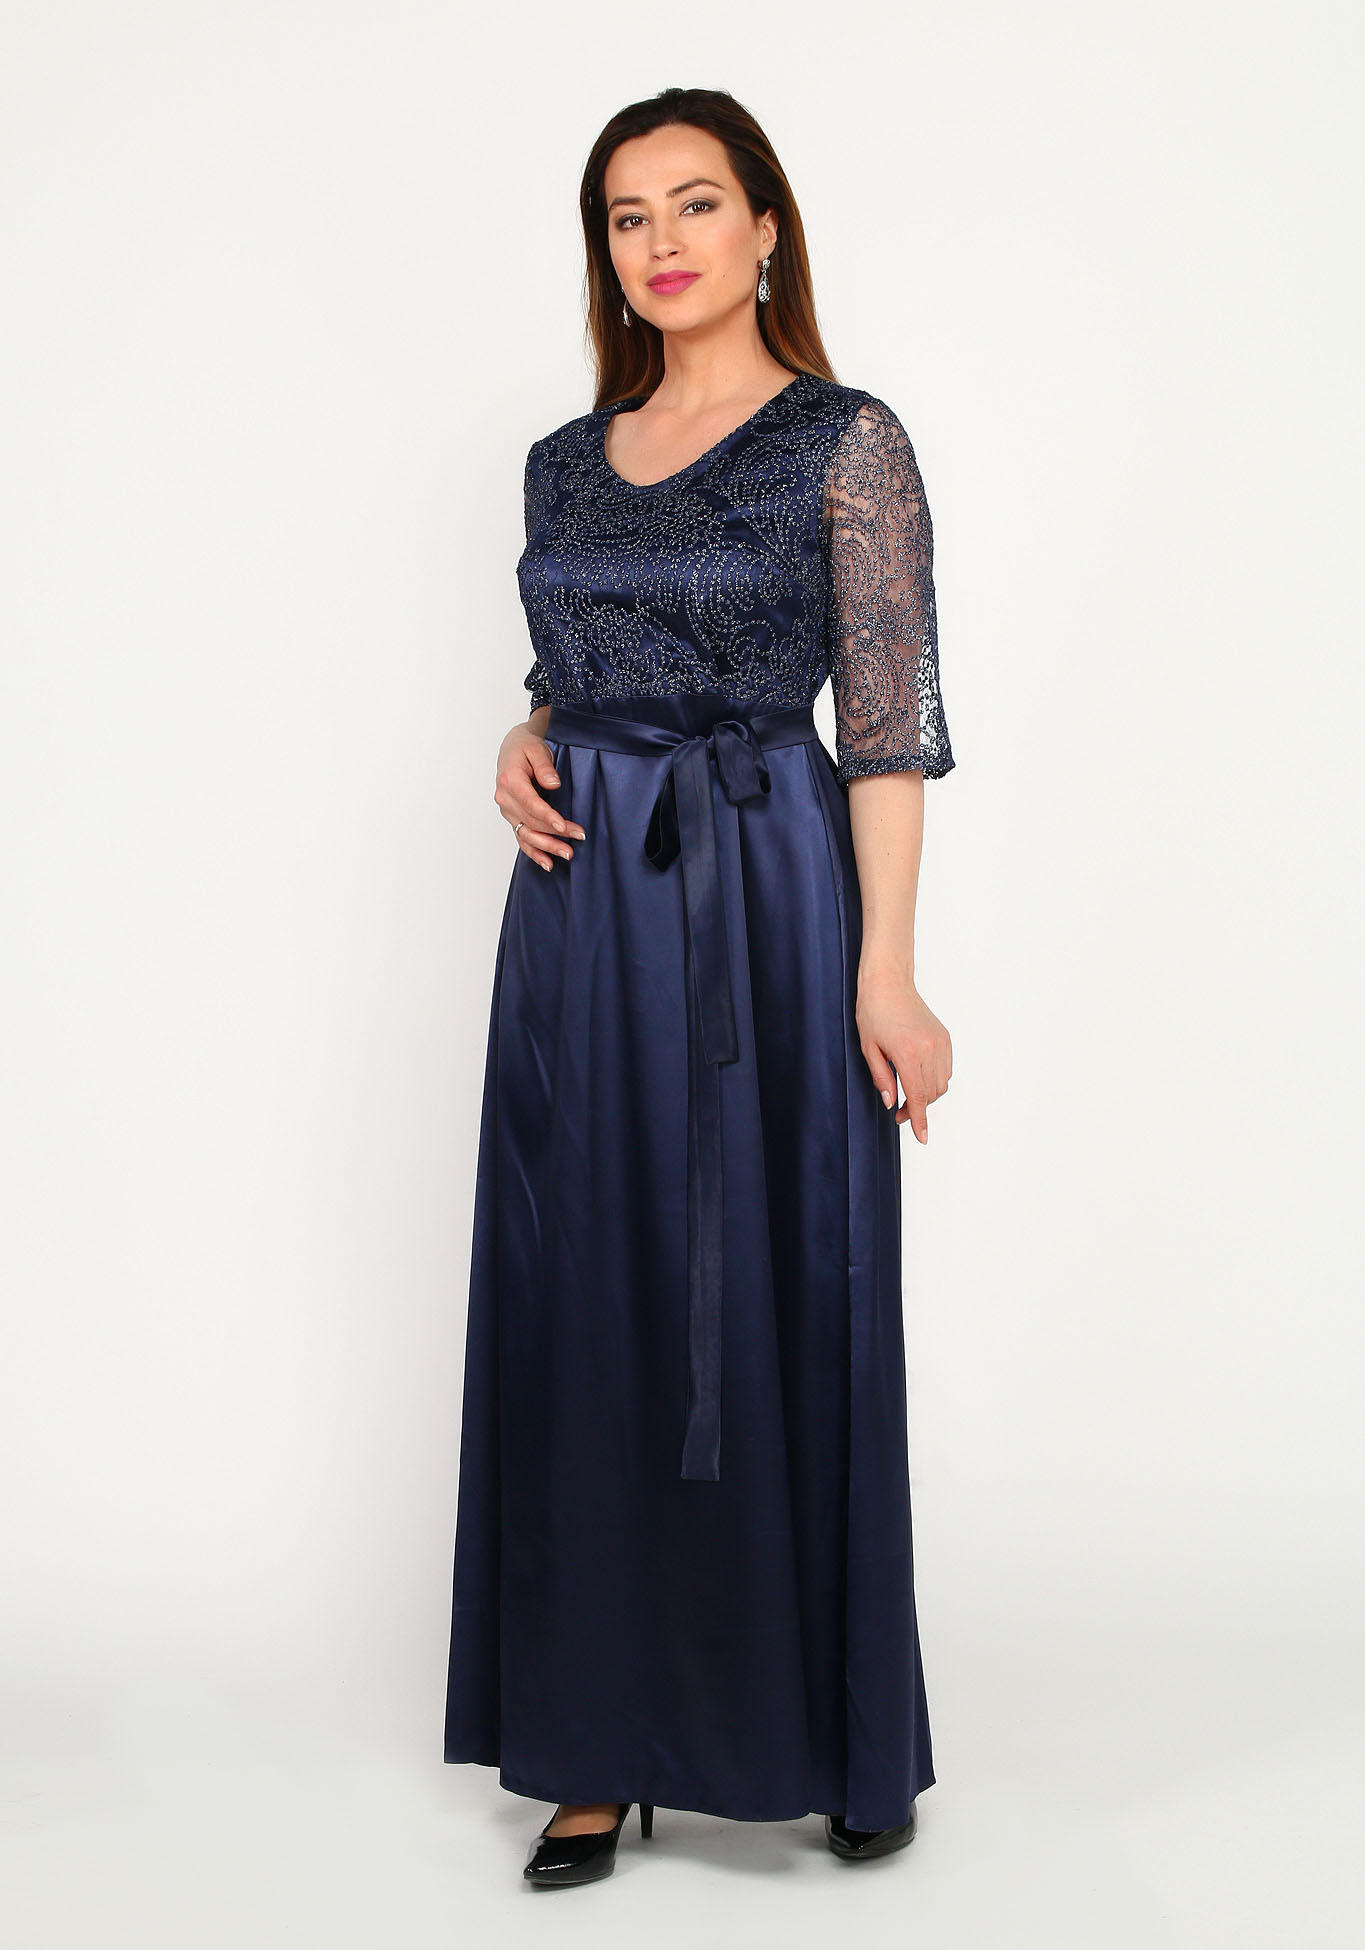 Платье вечернее в пол с кружевной отделкой Bel Fiore, размер 50, цвет синий - фото 3